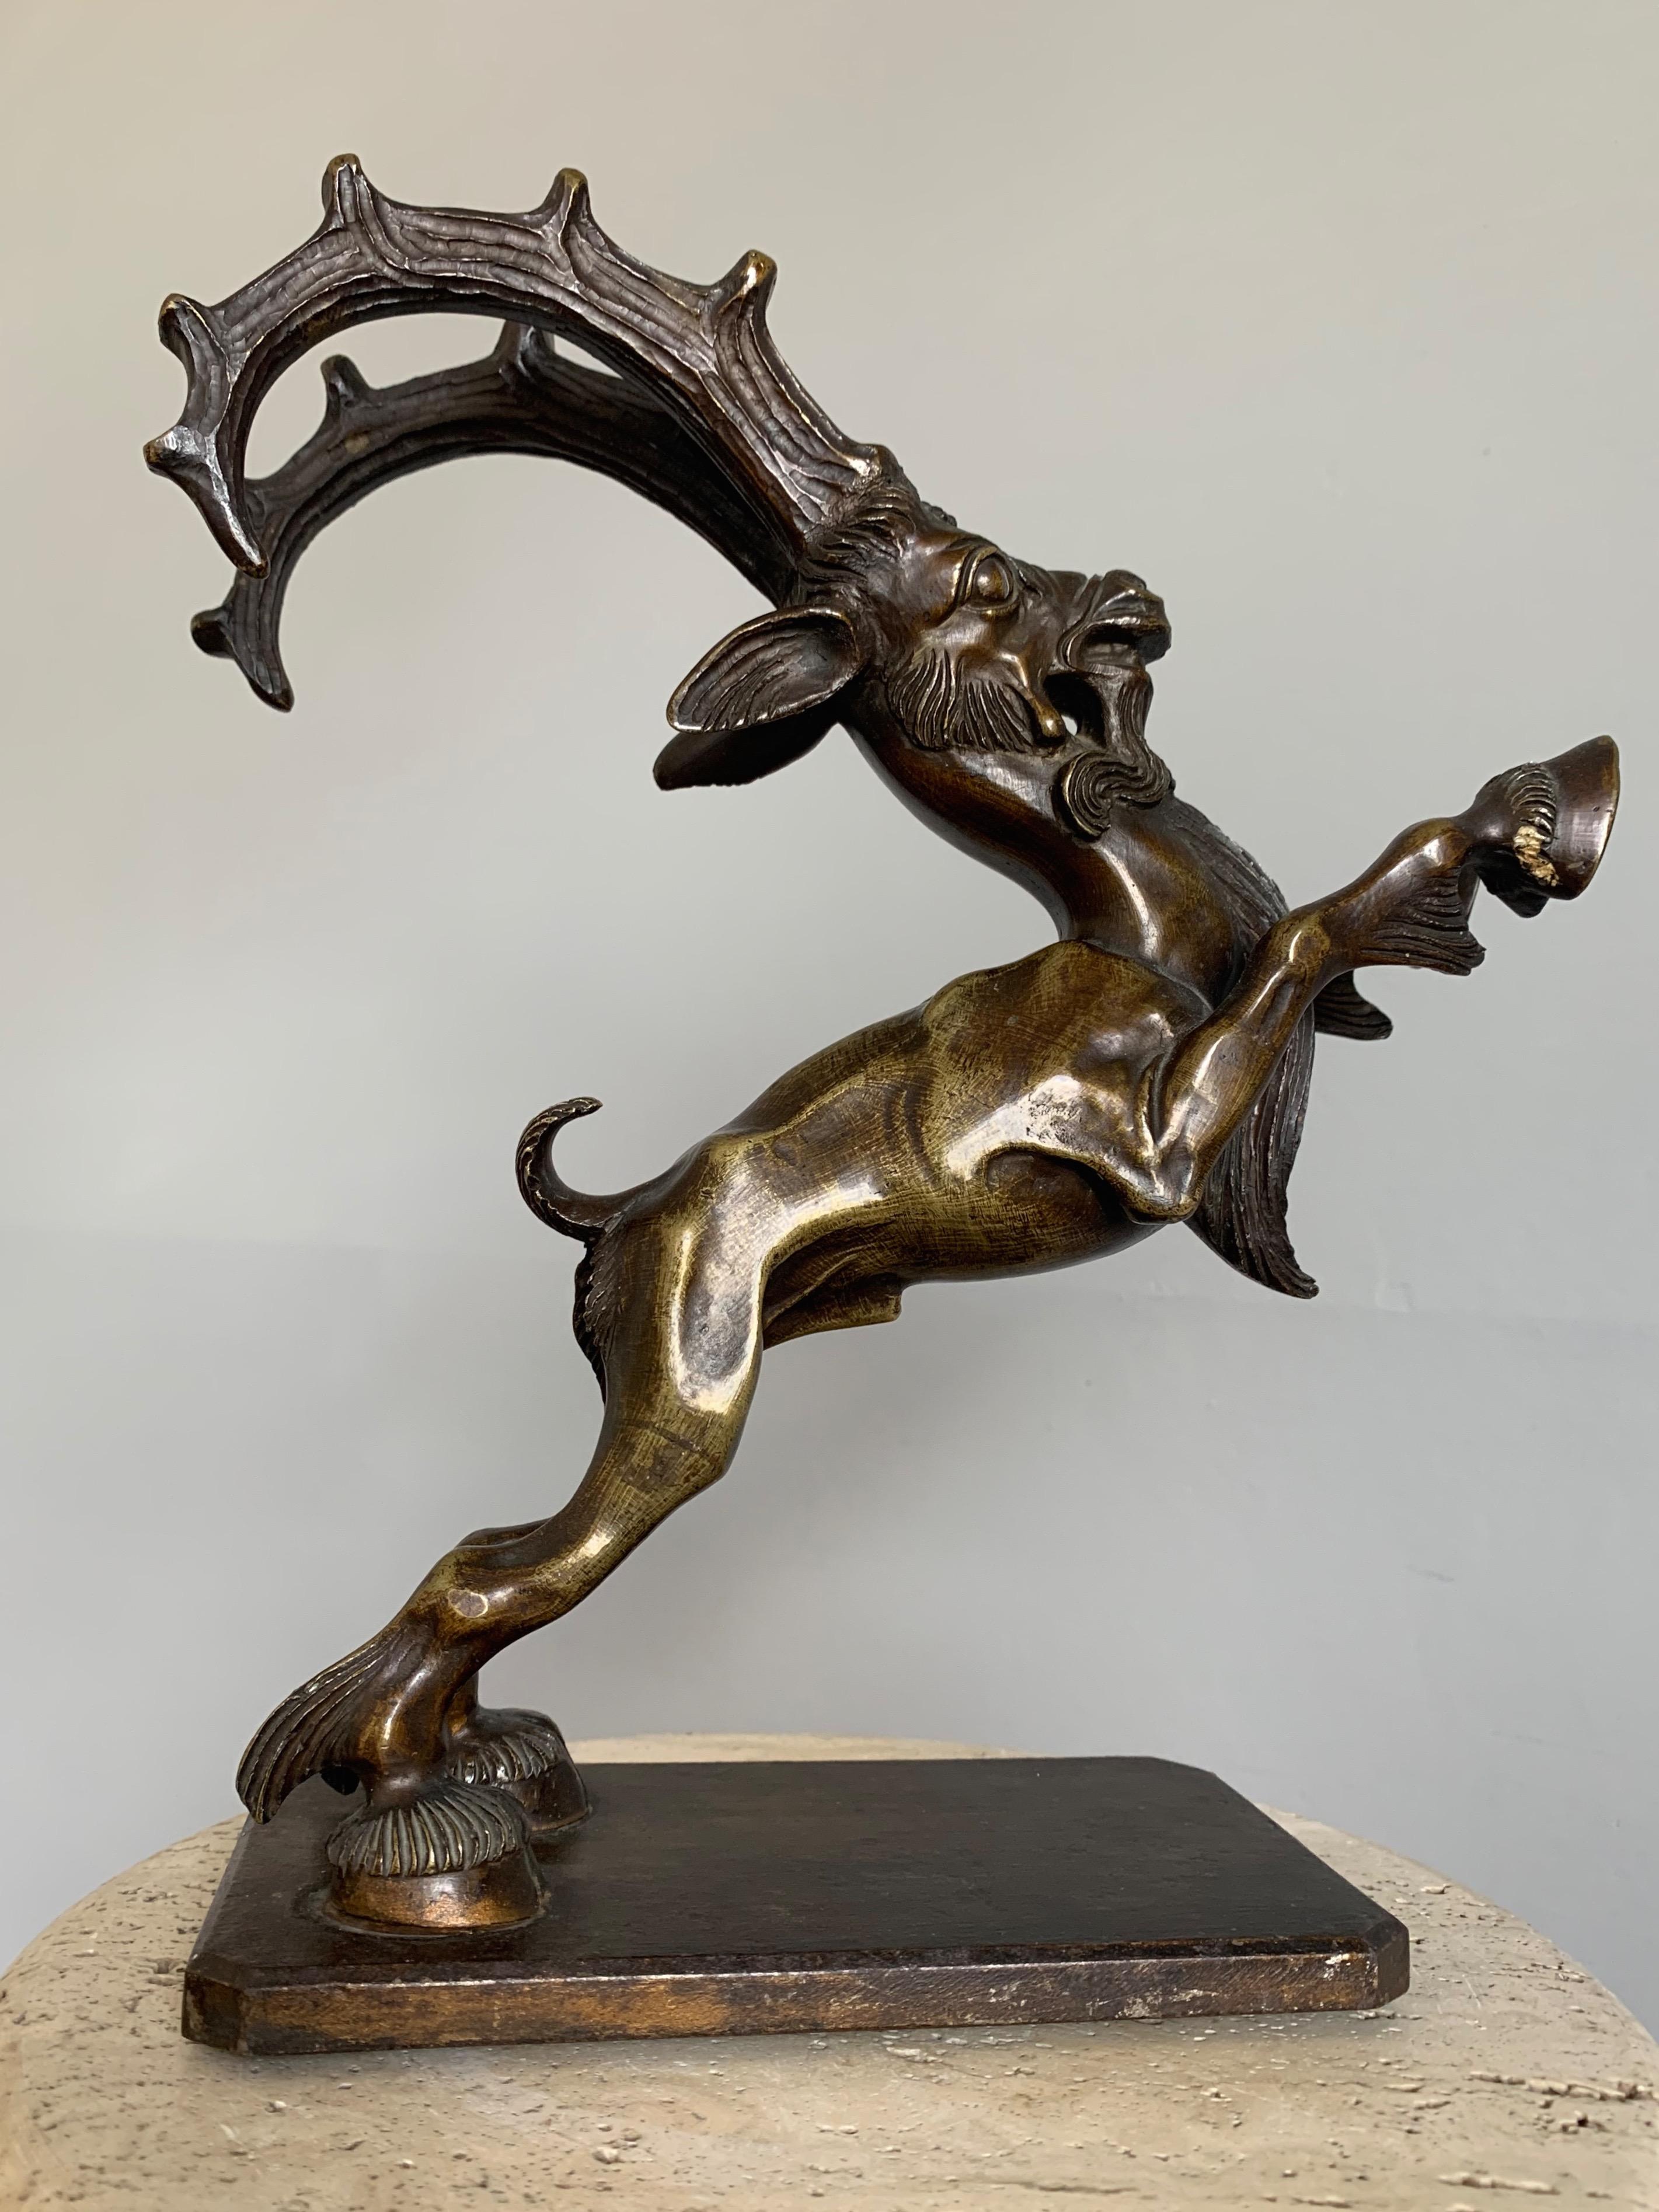 Artistic Qualität Bronzeskulptur mit übertriebenen Eigenschaften.

Es muss Sammler geben, die sofort den Namen des Künstlers kennen, der dieses wunderbare und seltene Kunstwerk geschaffen hat. Was diesen bronzenen Steinbock/ibex von allem, was wir